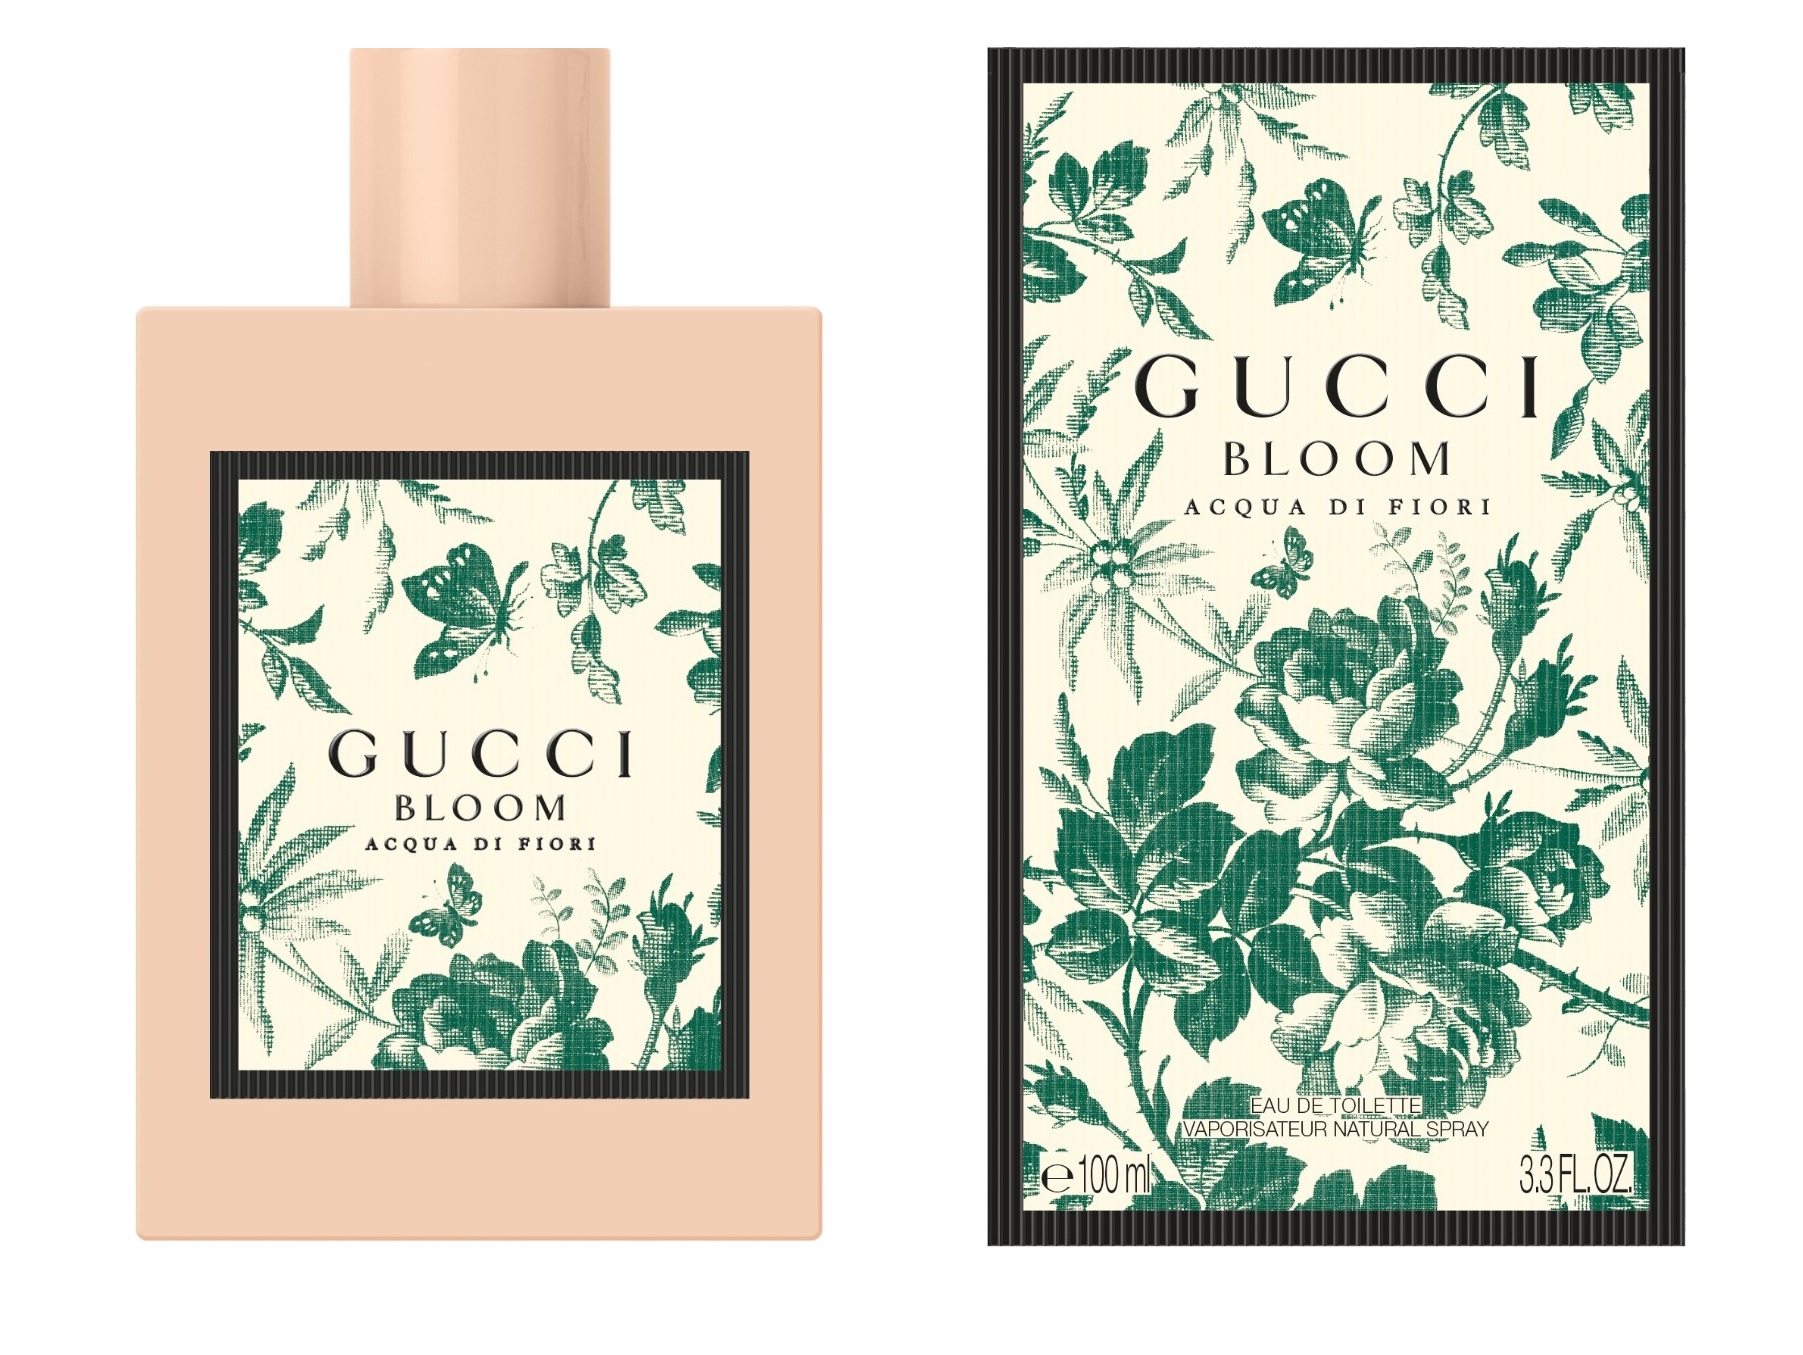 Gucci Bloom Acqua di Fiori, Toaletní voda 100ml - Tester